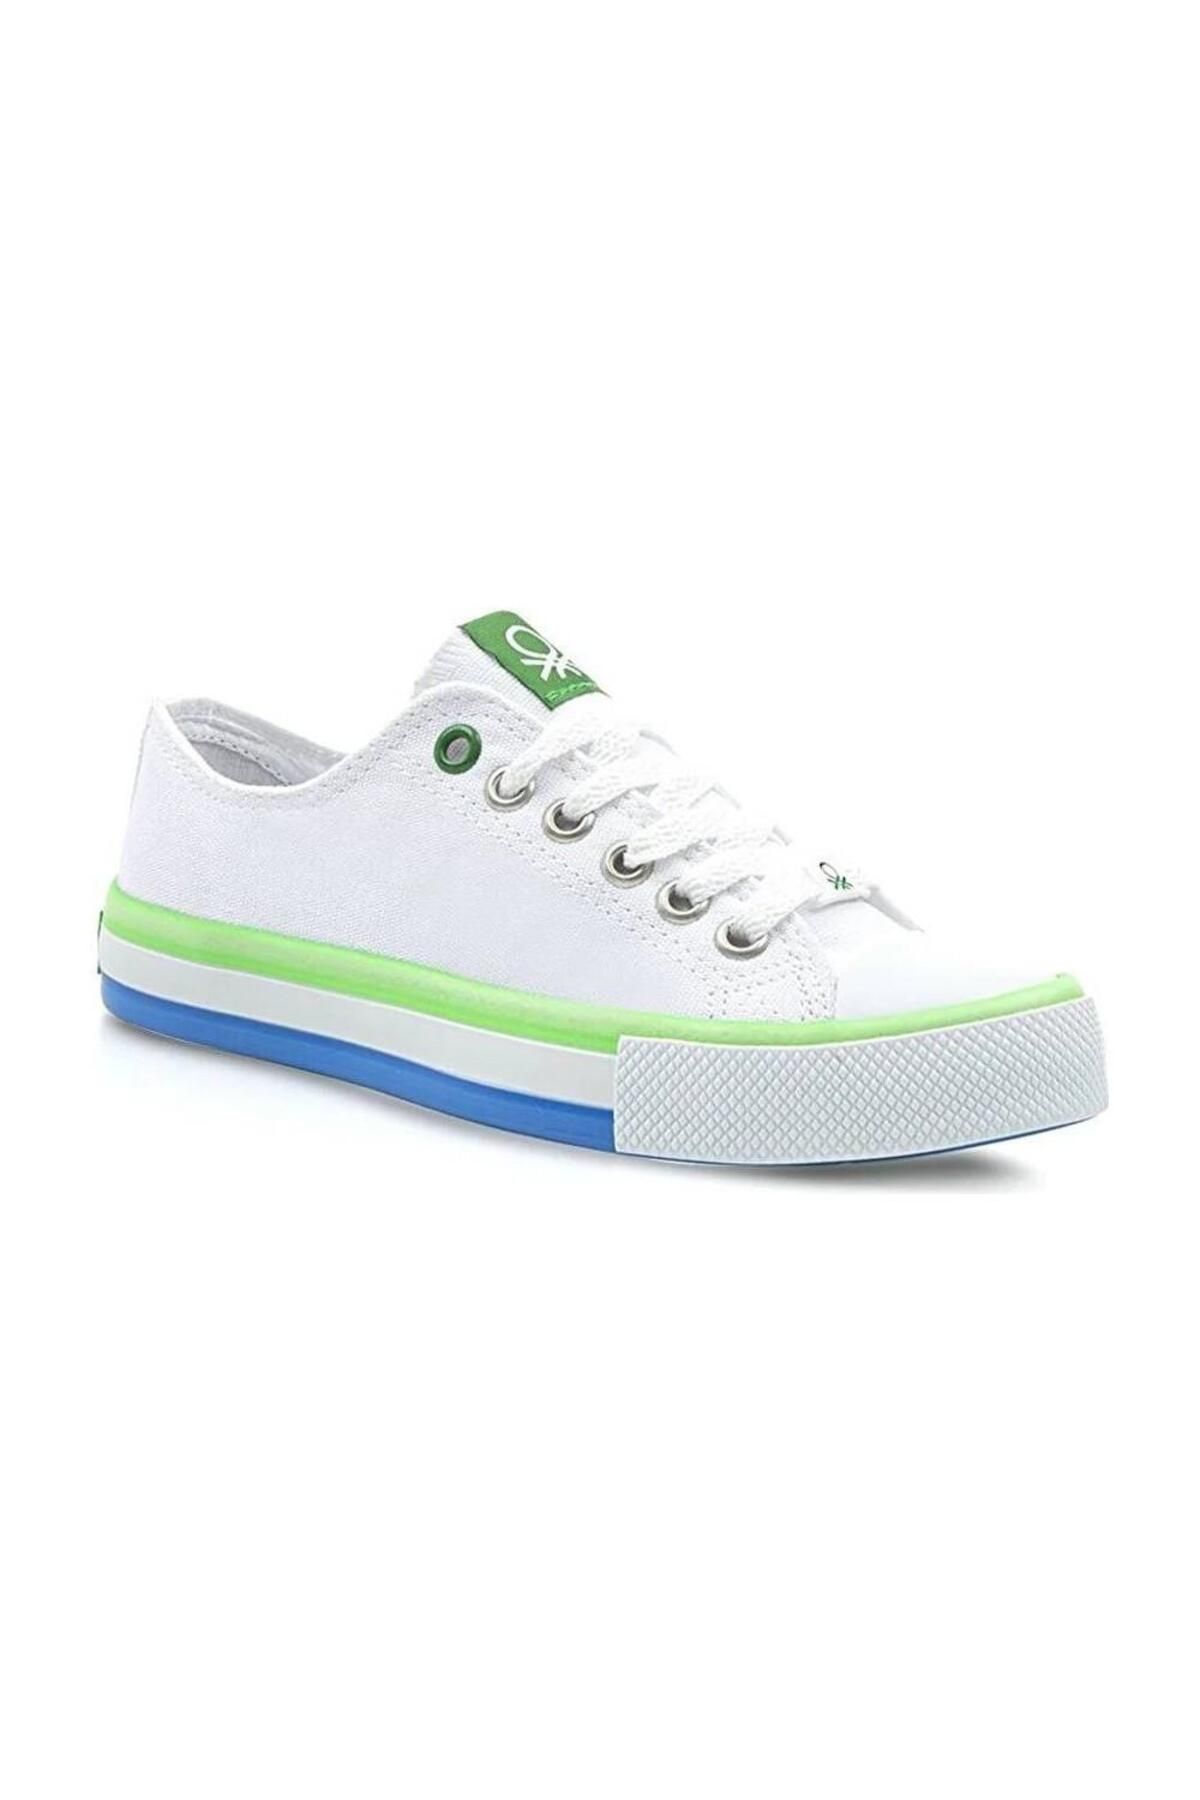 Benetton Filet Beyaz Yeşil Çocuk Spor Ayakkabı